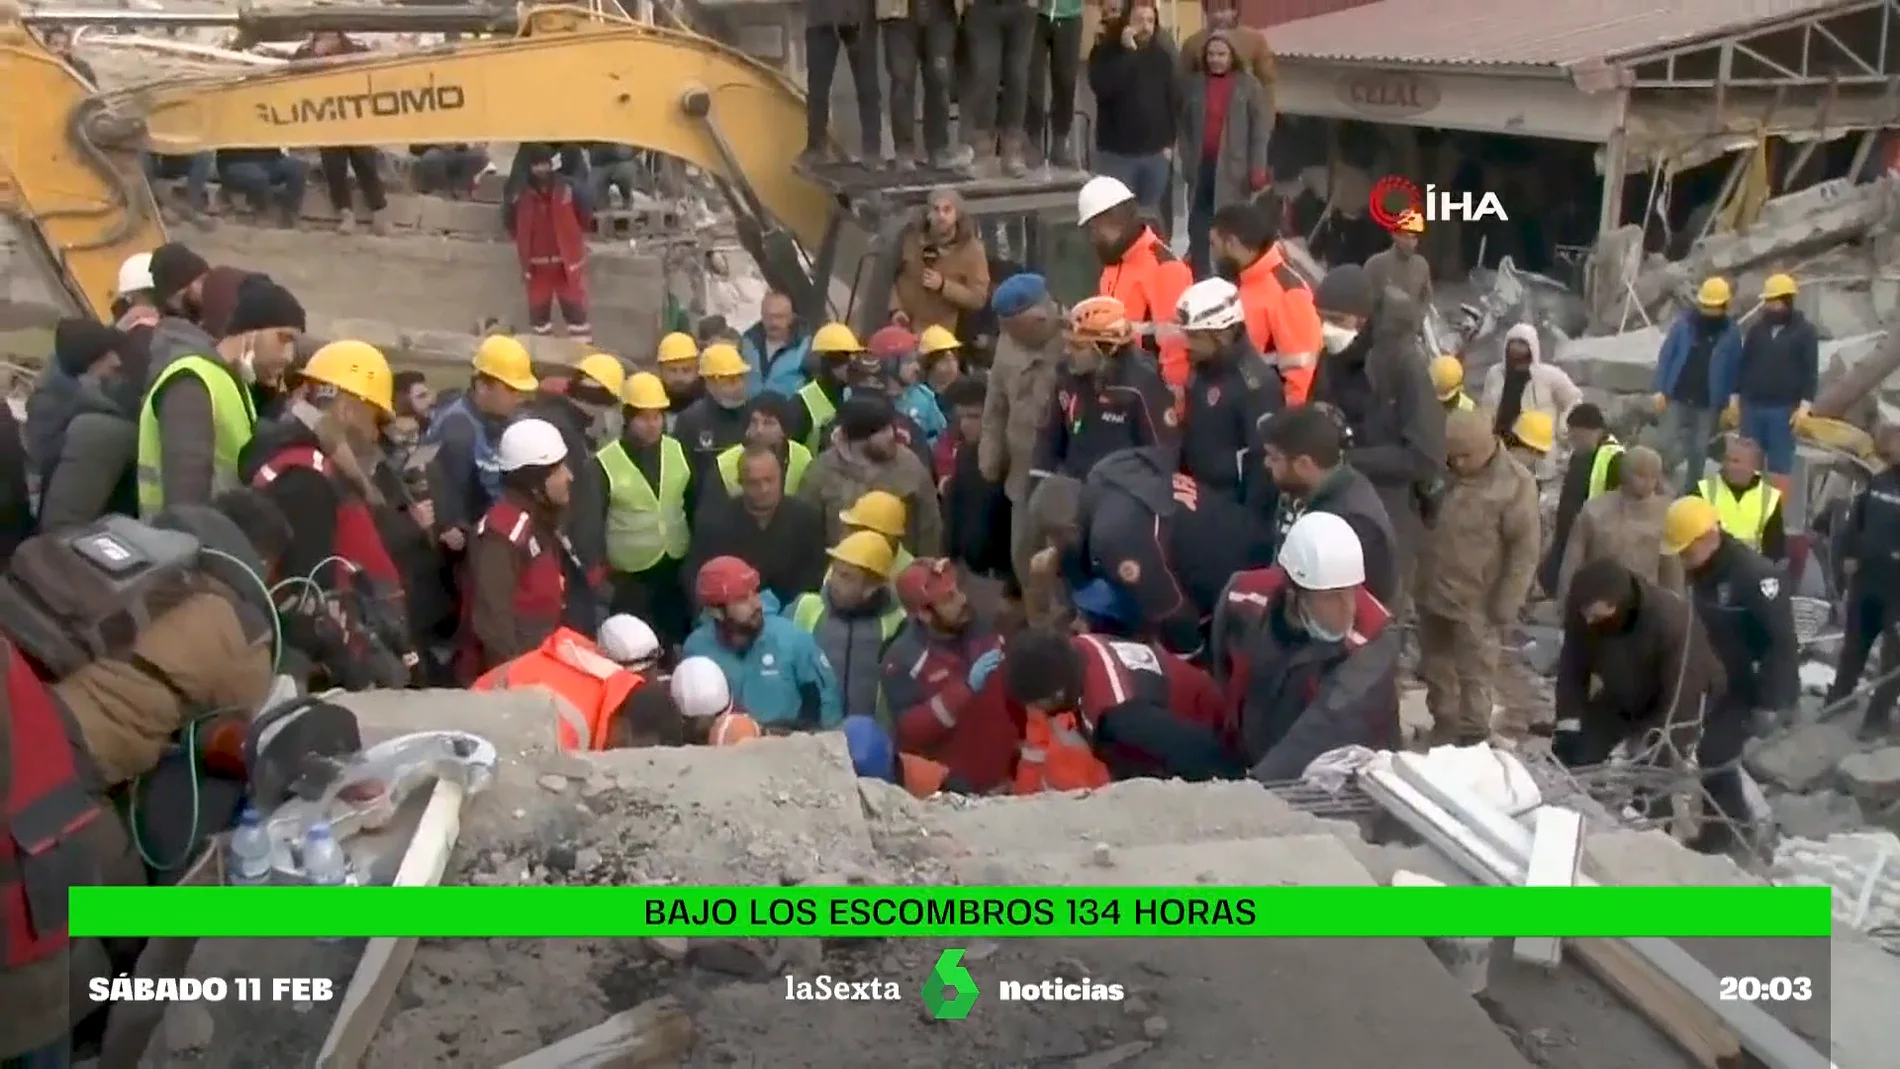 Rescatan a una joven que pasó 134 horas entre los escombros después de los terremotos en Turquía